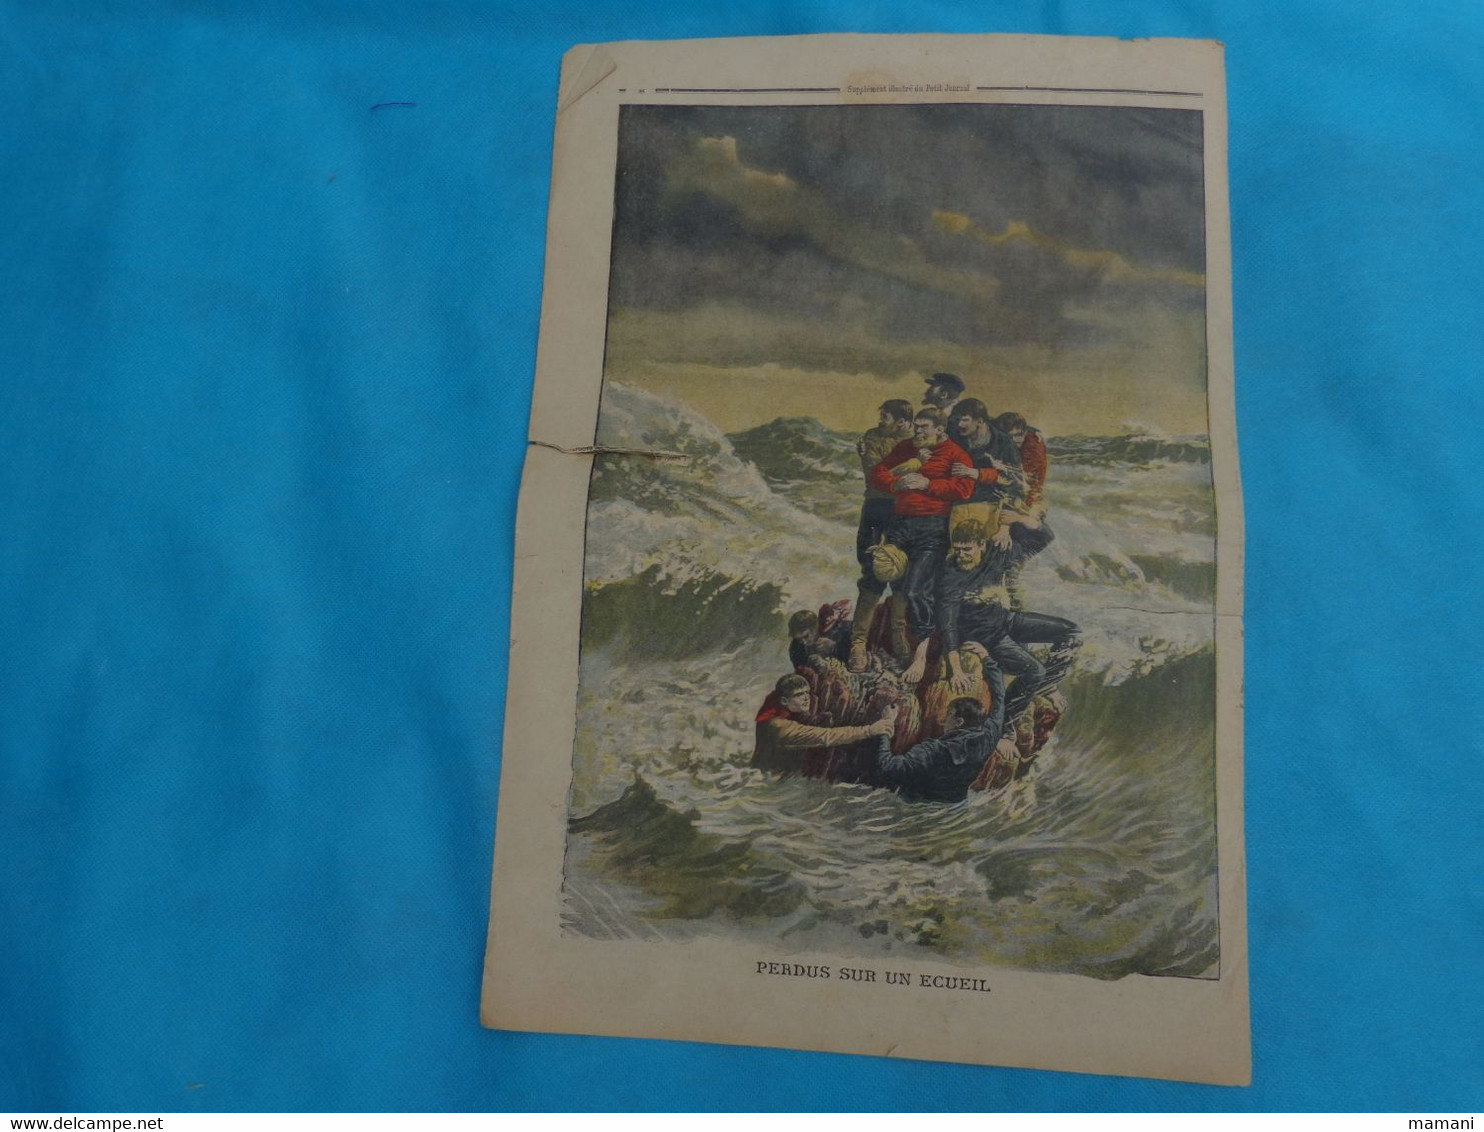 3 numeros Le Petit Journal janvier n°2-9-30 de 1910 albert elisabeth-inondation espagne-chanteler